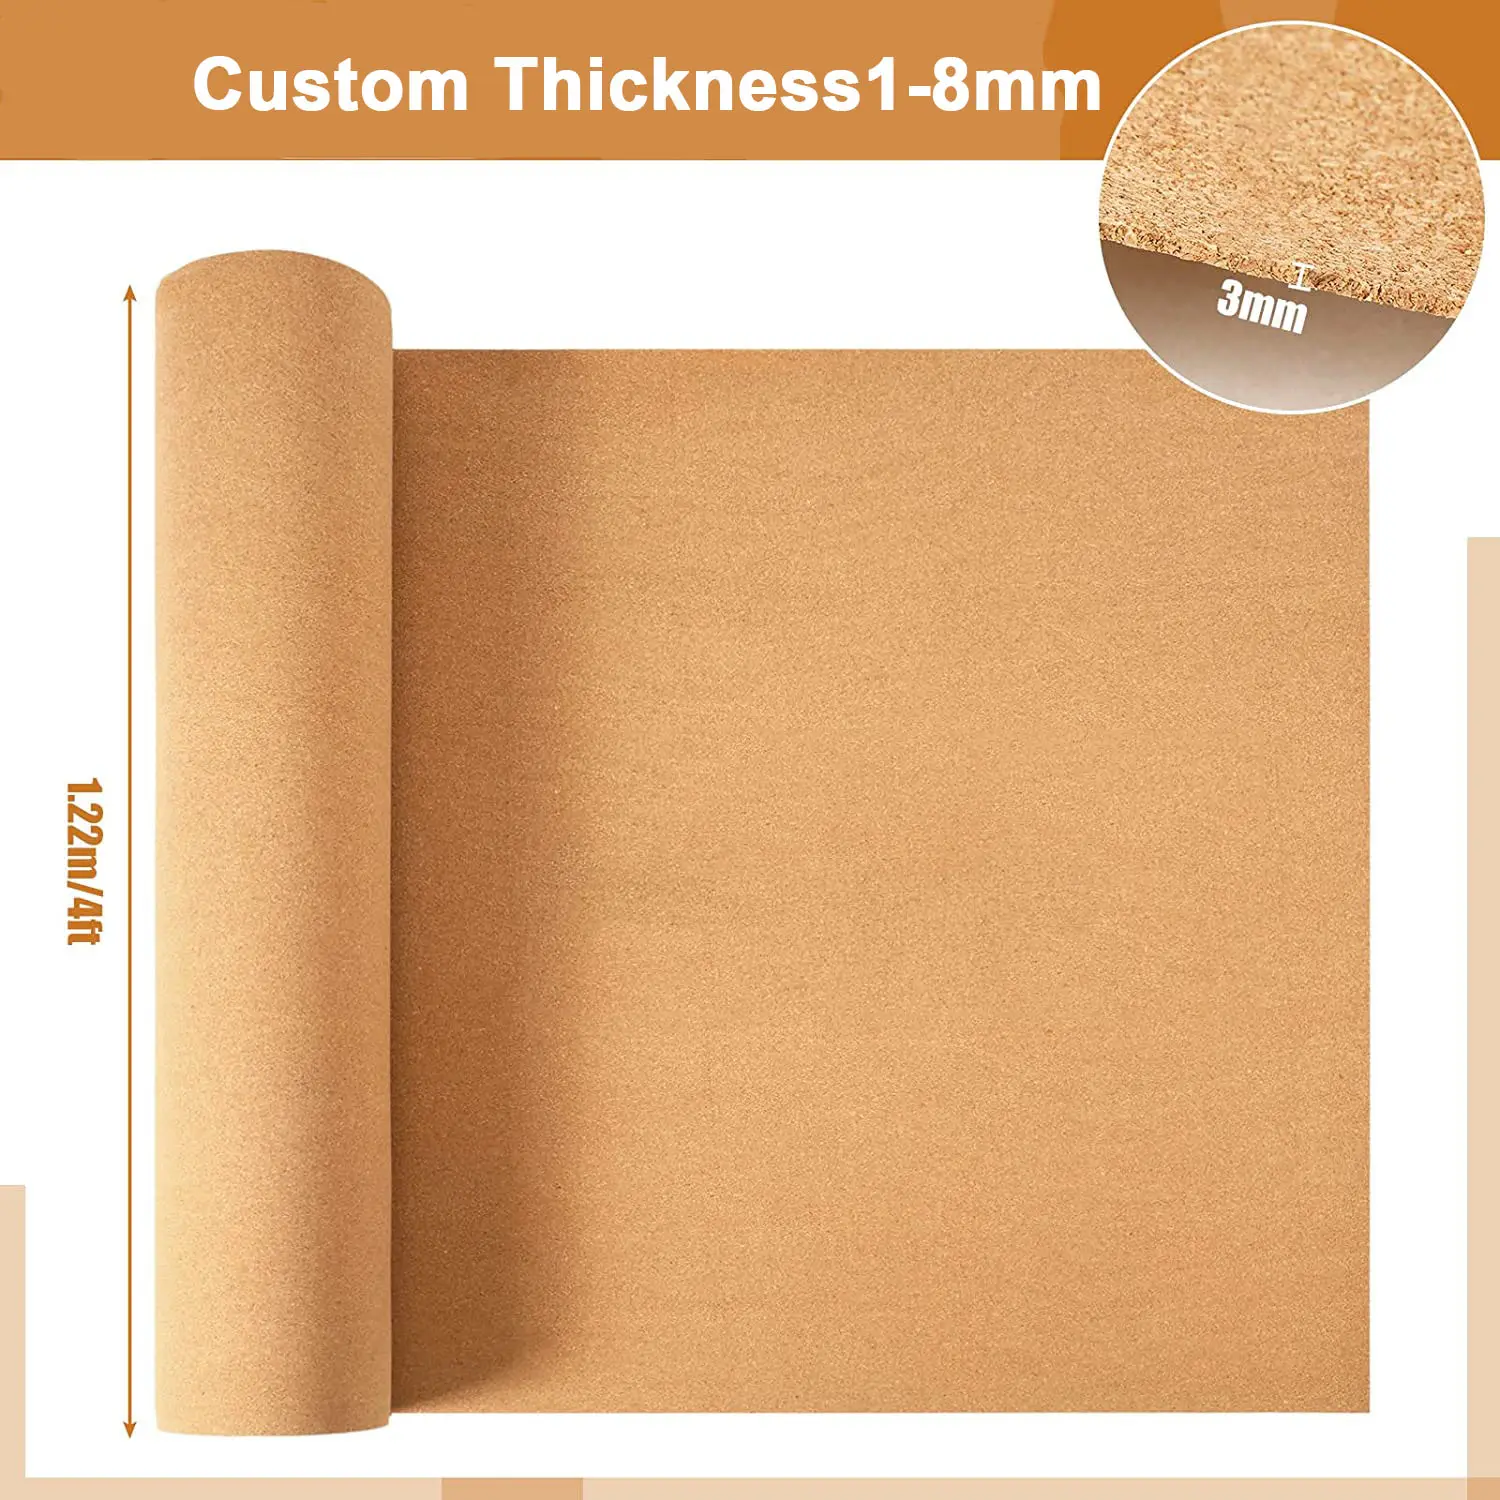 LEECORK Factory Price Cork Flooring Underlayment Natural Cork Underlay 1- 8mm Sound insulation Cork Underlayment